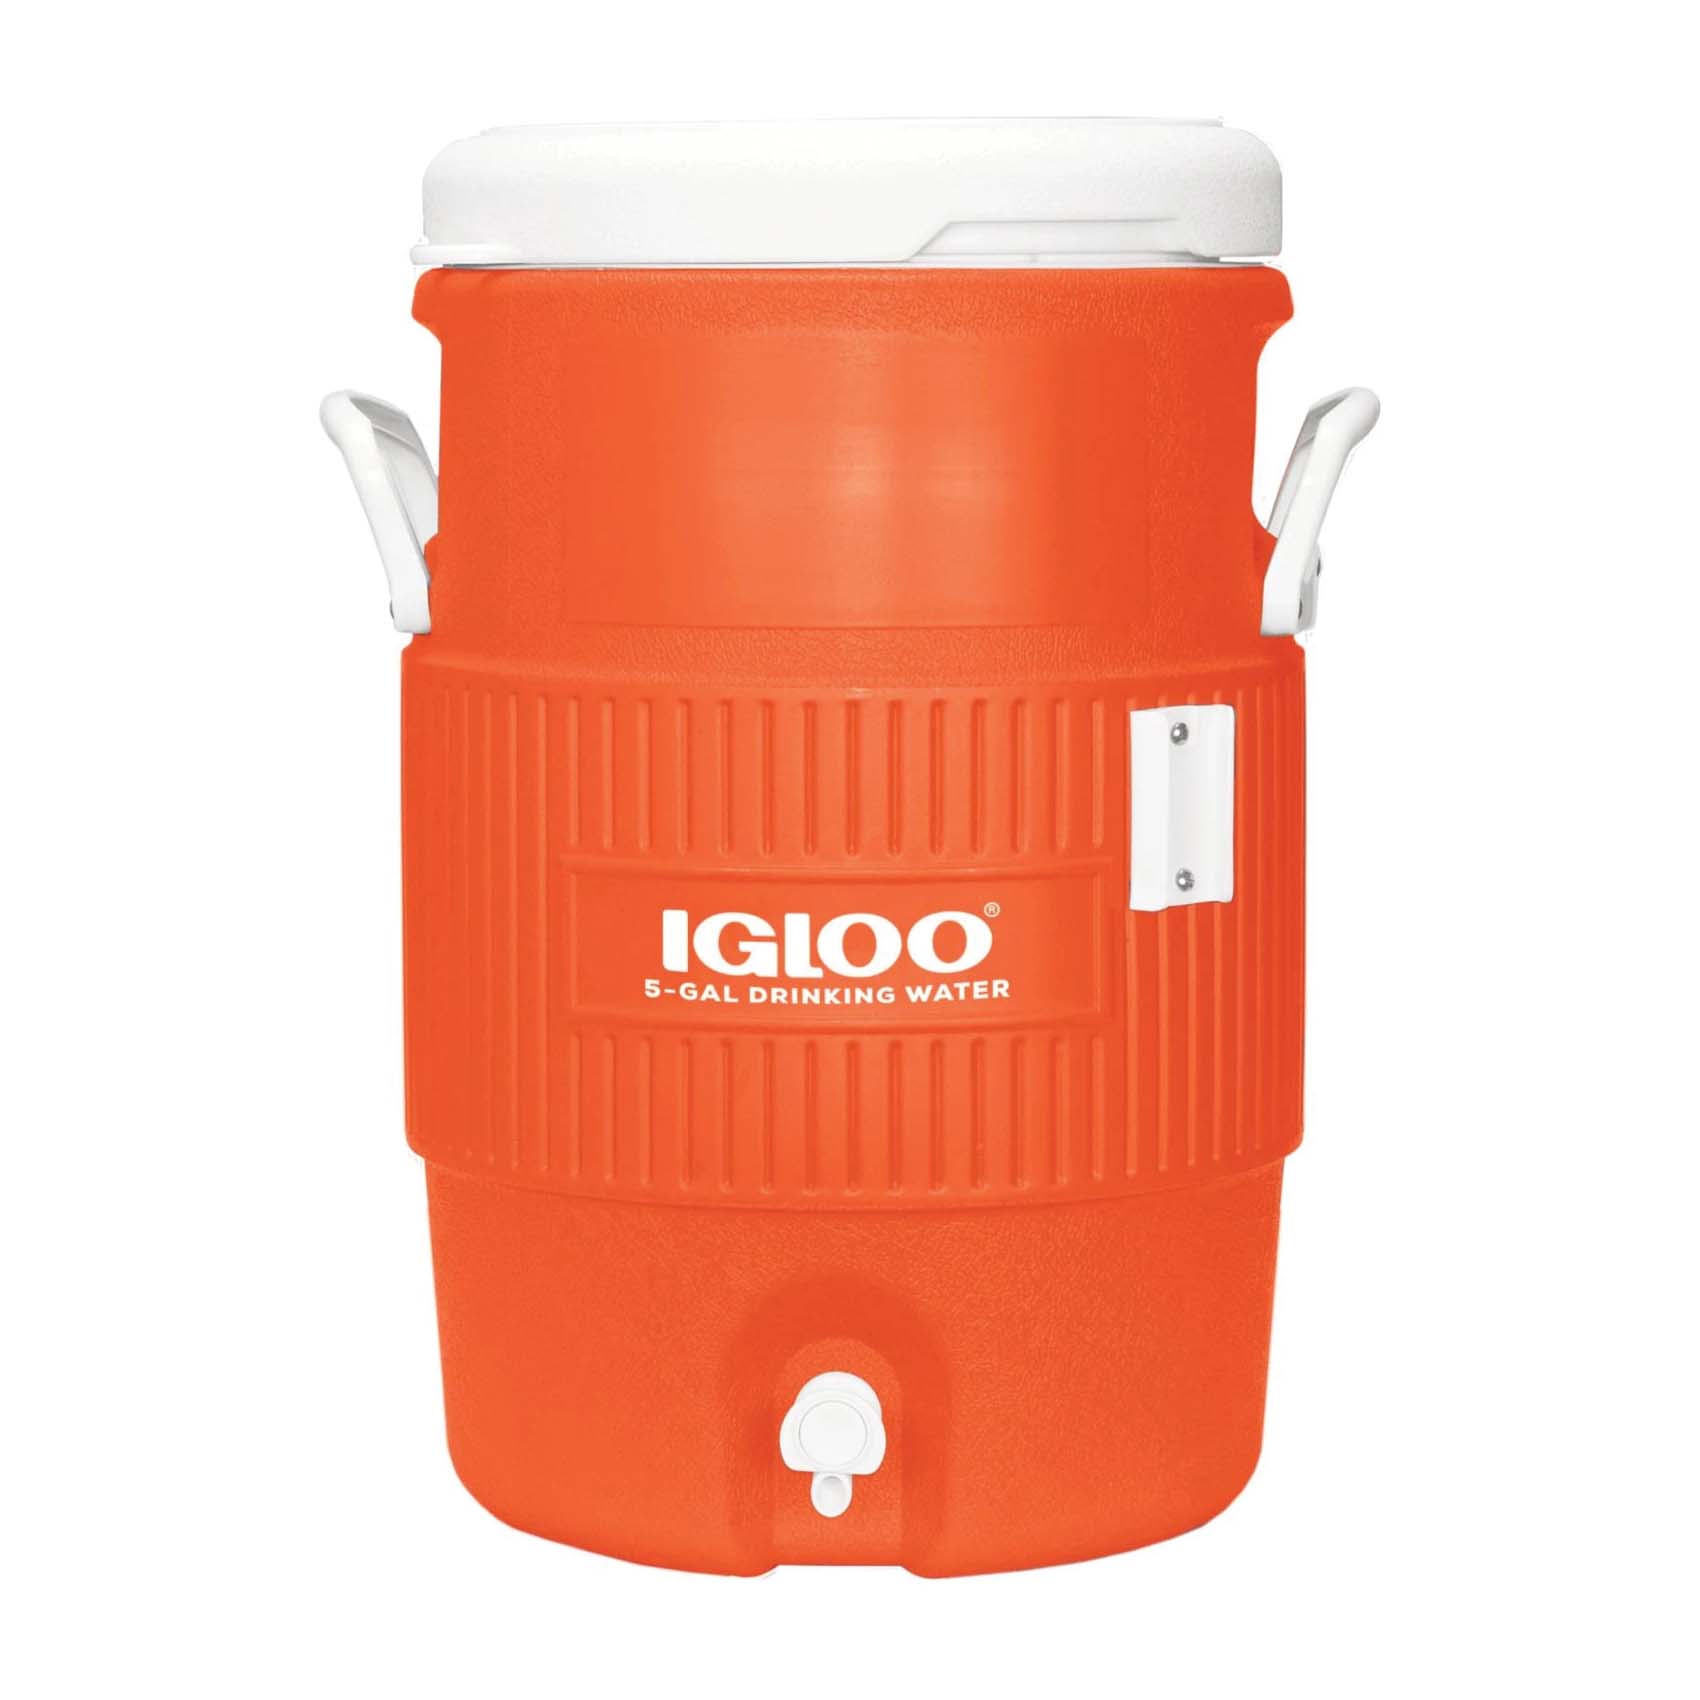 IGLOO 42316 Water Jug, 5 gal Capacity, Orange/White, Reinforced Handle